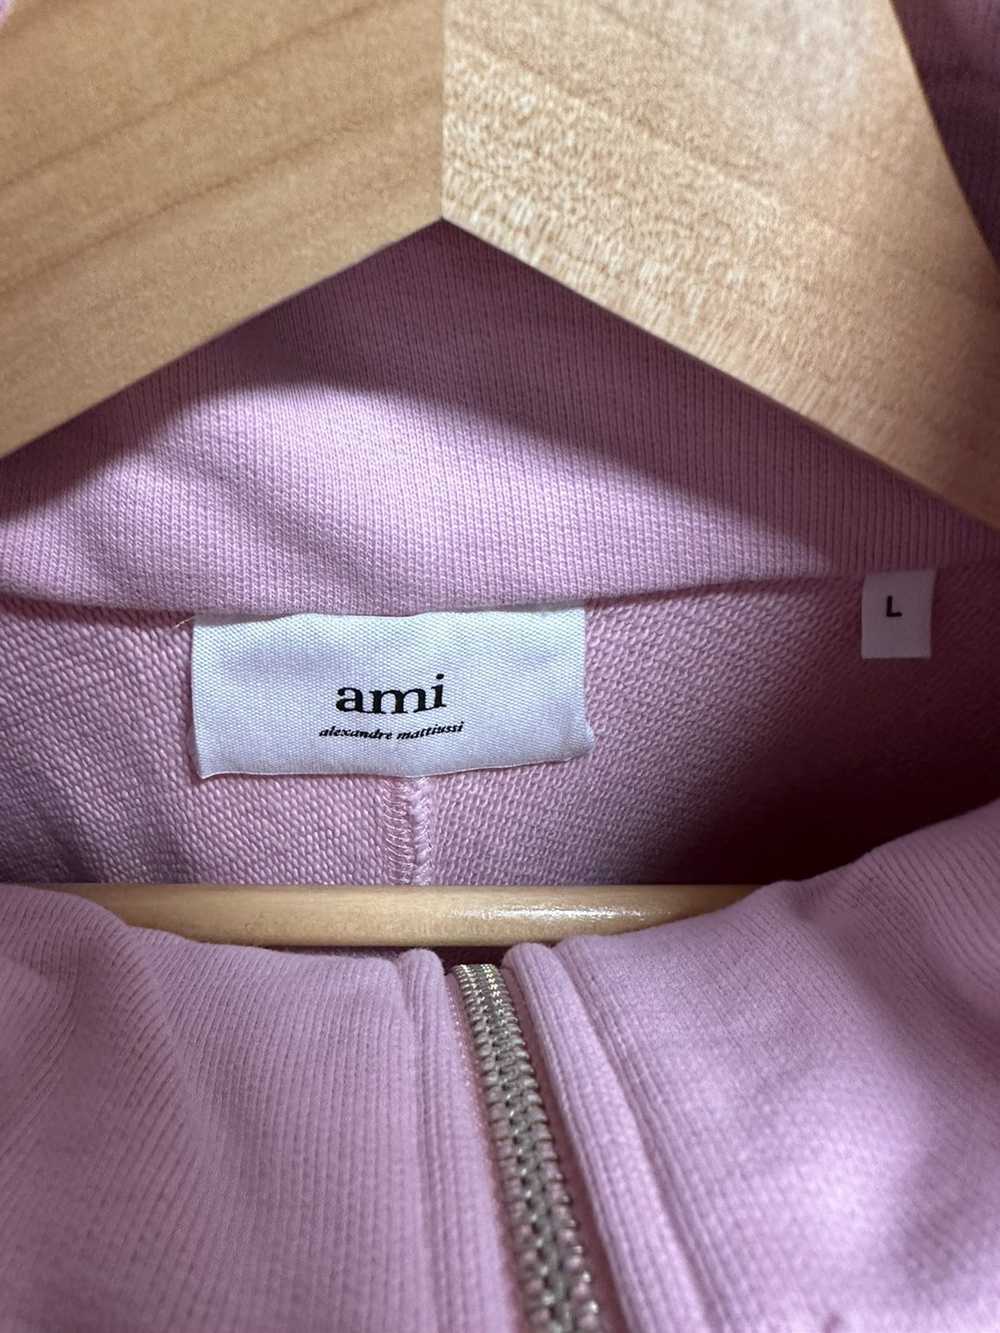 AMI Ami de couer zipped sweatshirt - image 3